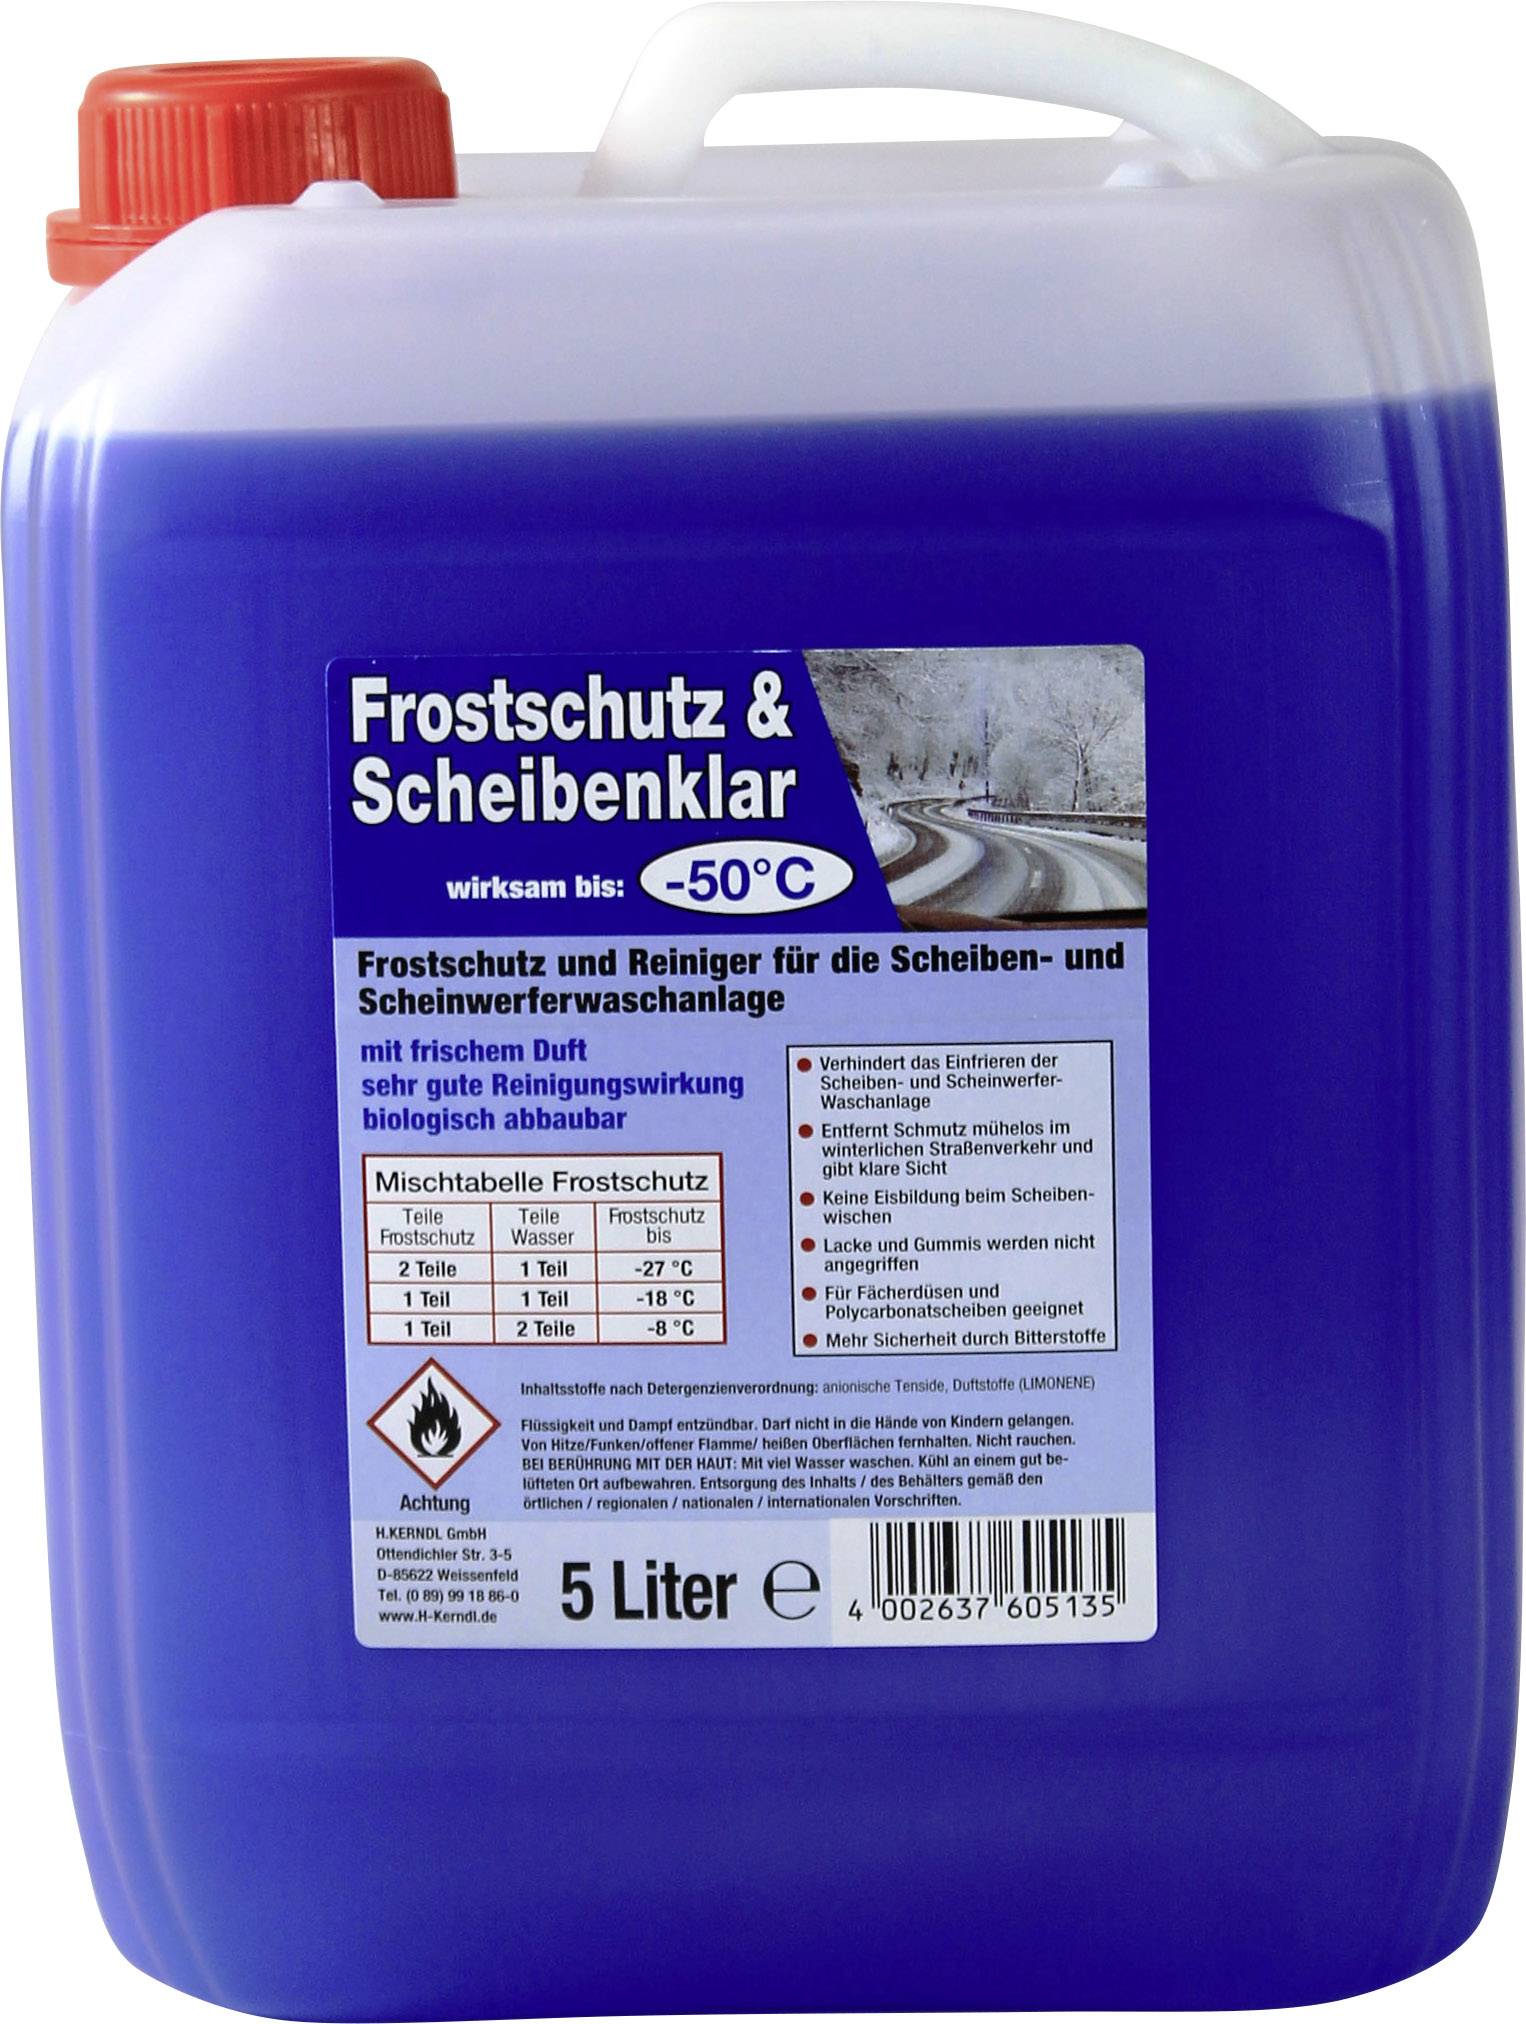 Kerndl 60505 Scheiben-Frostschutz Scheibenwaschanlage 5 l -50